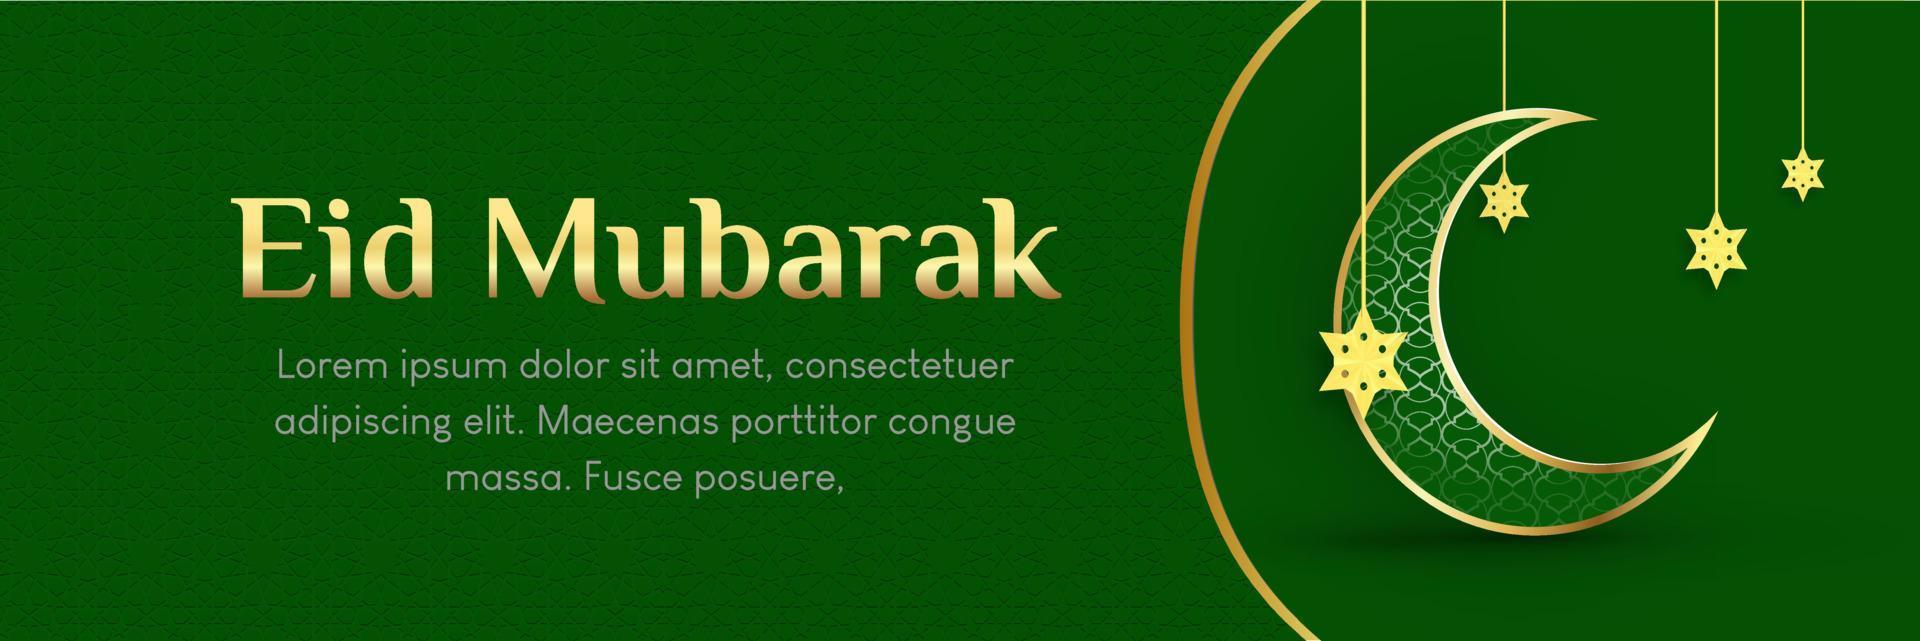 hintergrund für ramadan kareem mit grüner und goldener farbe vektor